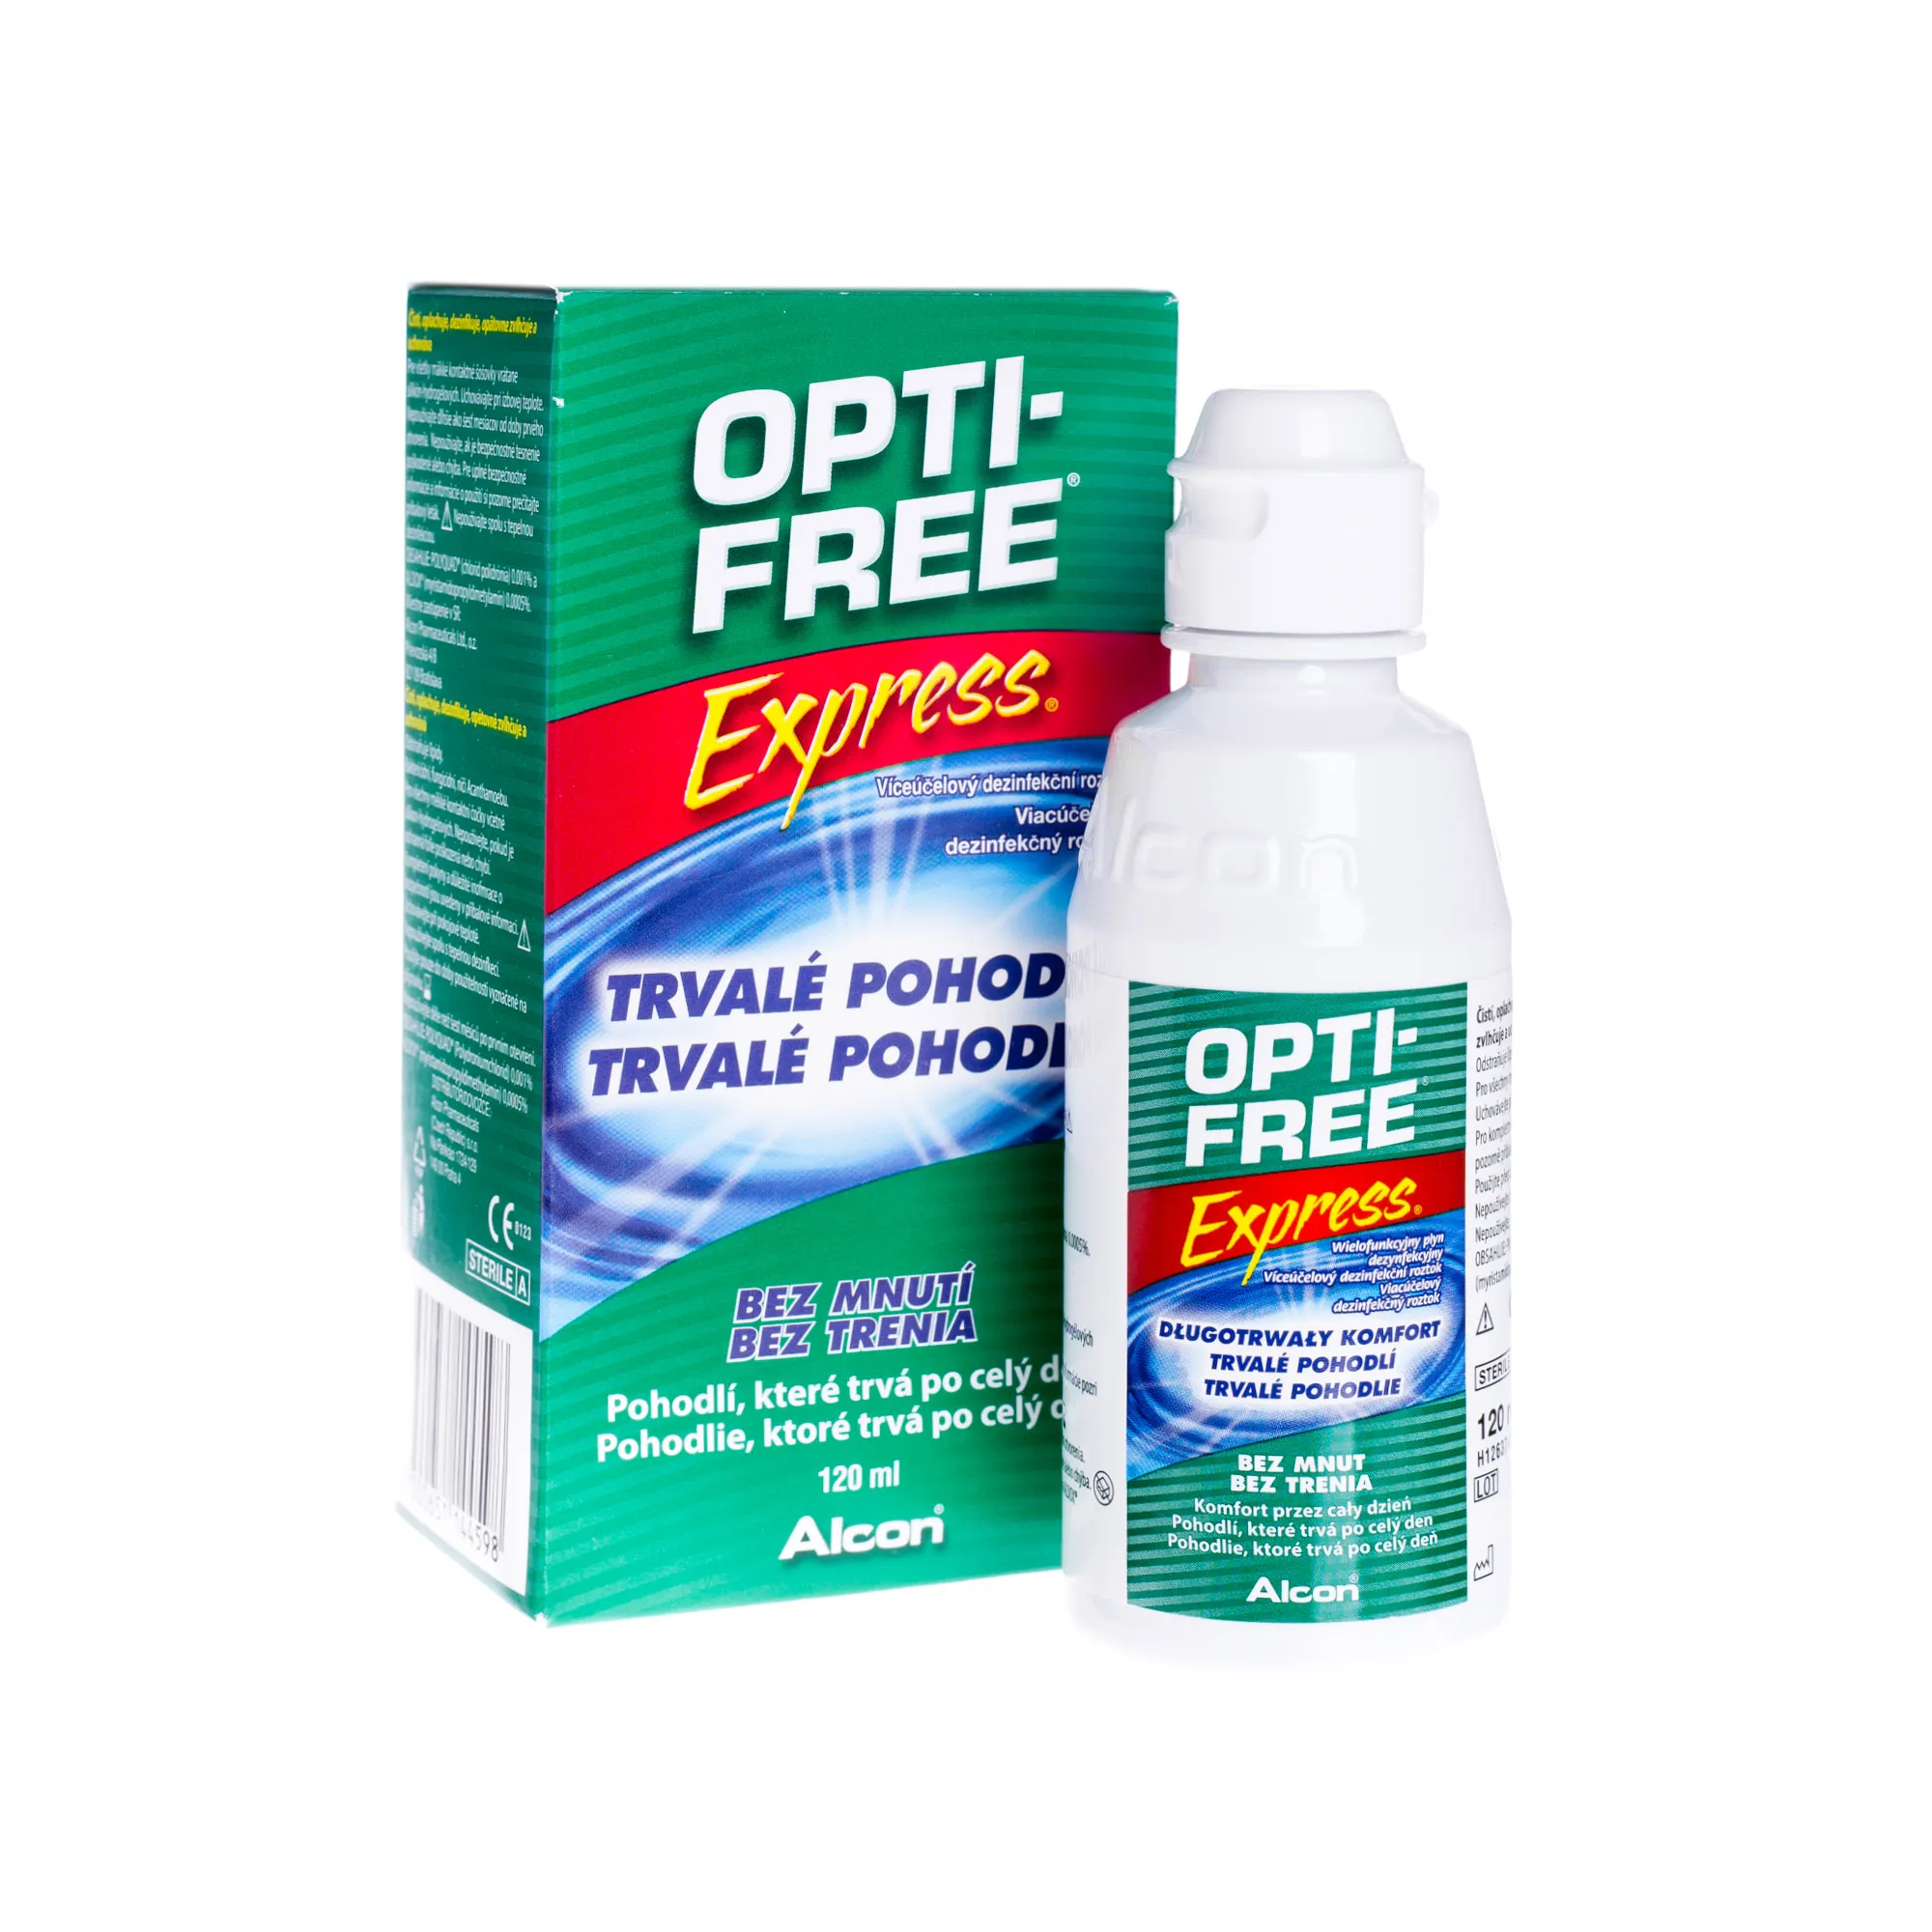 Opti-Free Express, wielofunkcyjny płyn dezynfekcyjny, 120 ml 